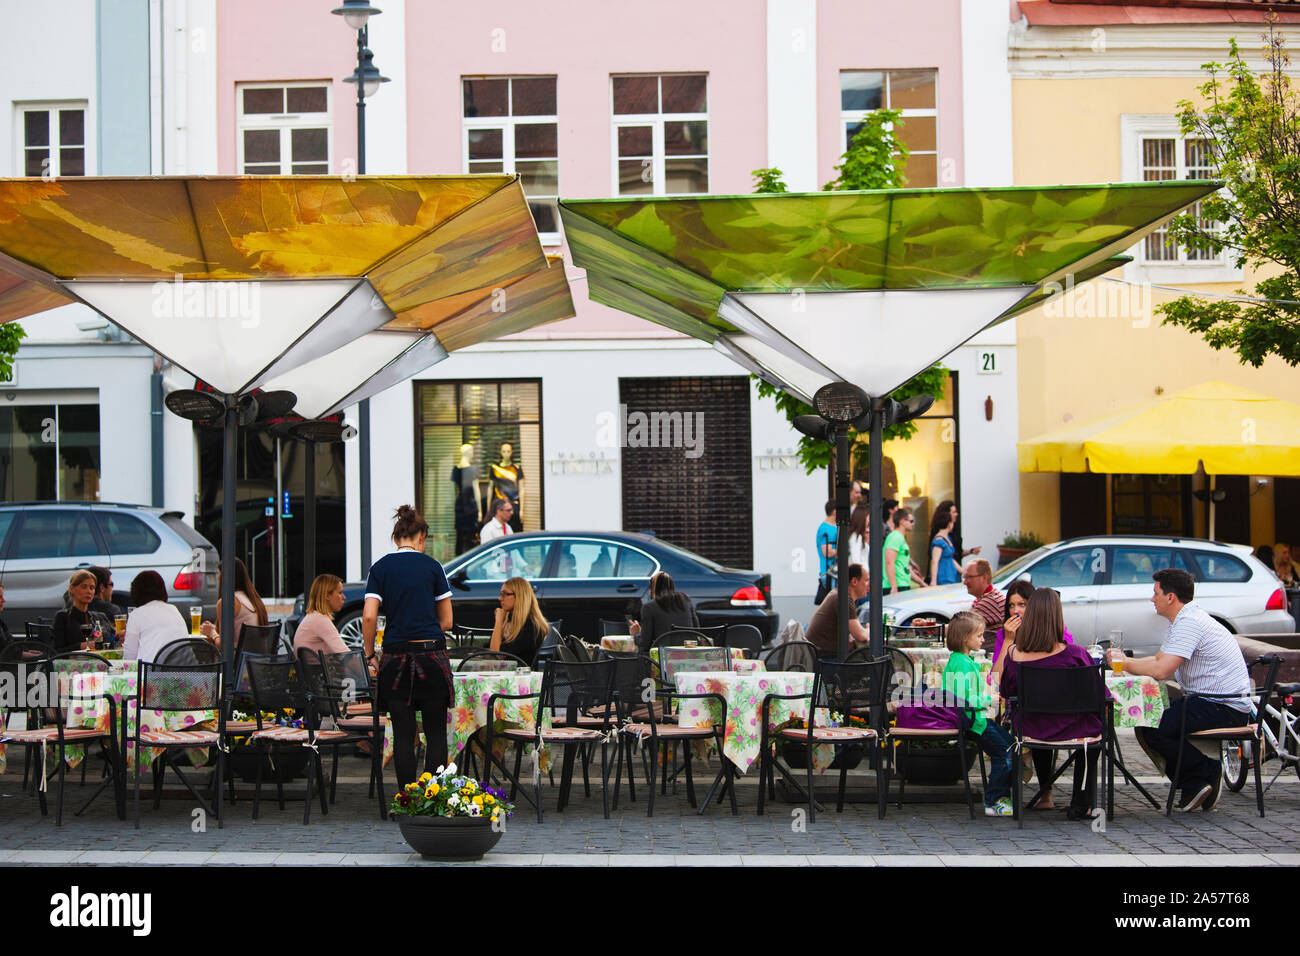 Menschen in einem Café im Freien, Rathausplatz, Altstadt, Vilnius, Litauen Stockfoto